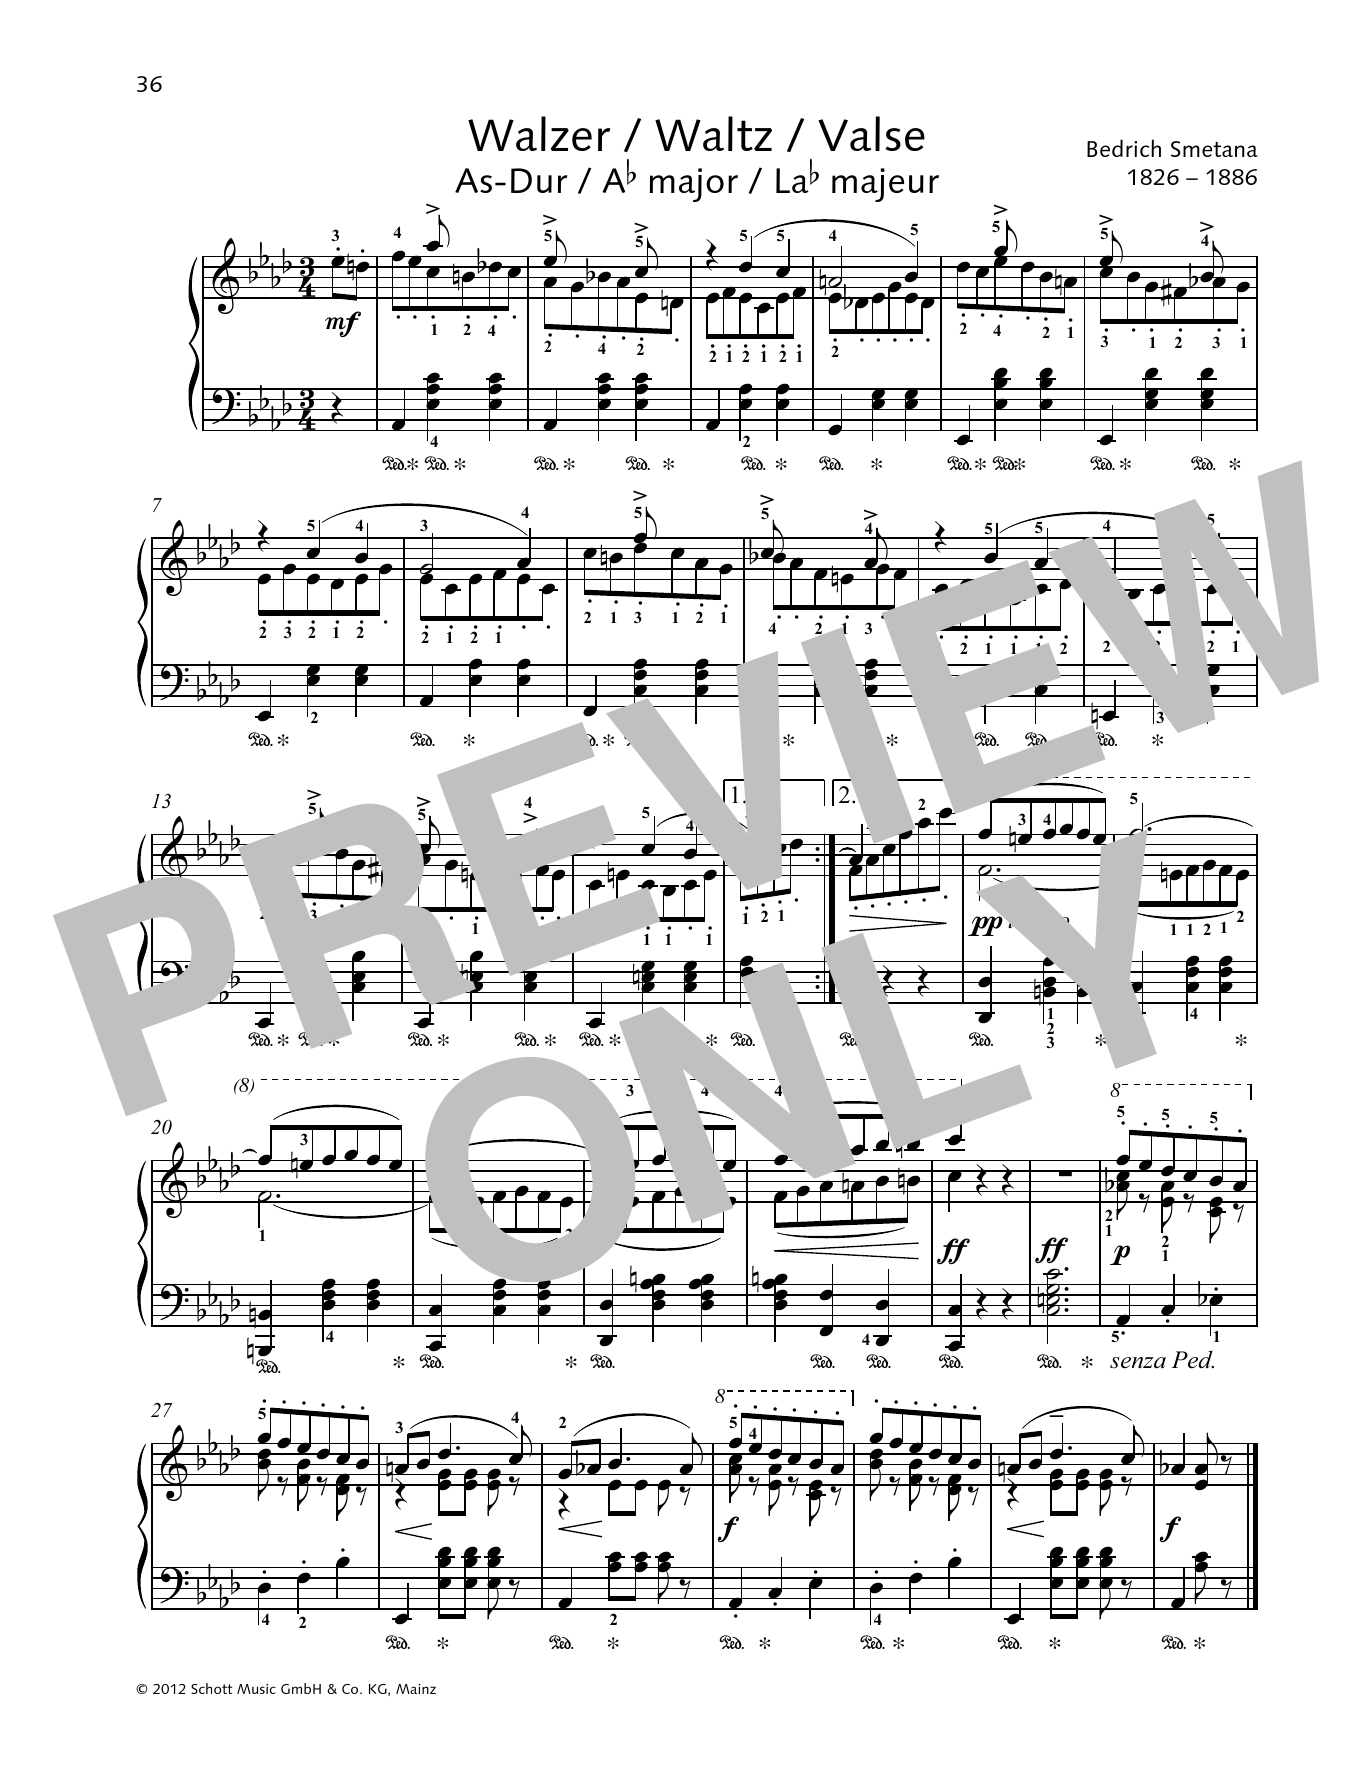 Waltz A-flat major (Piano Solo) von Bedrich Smetana